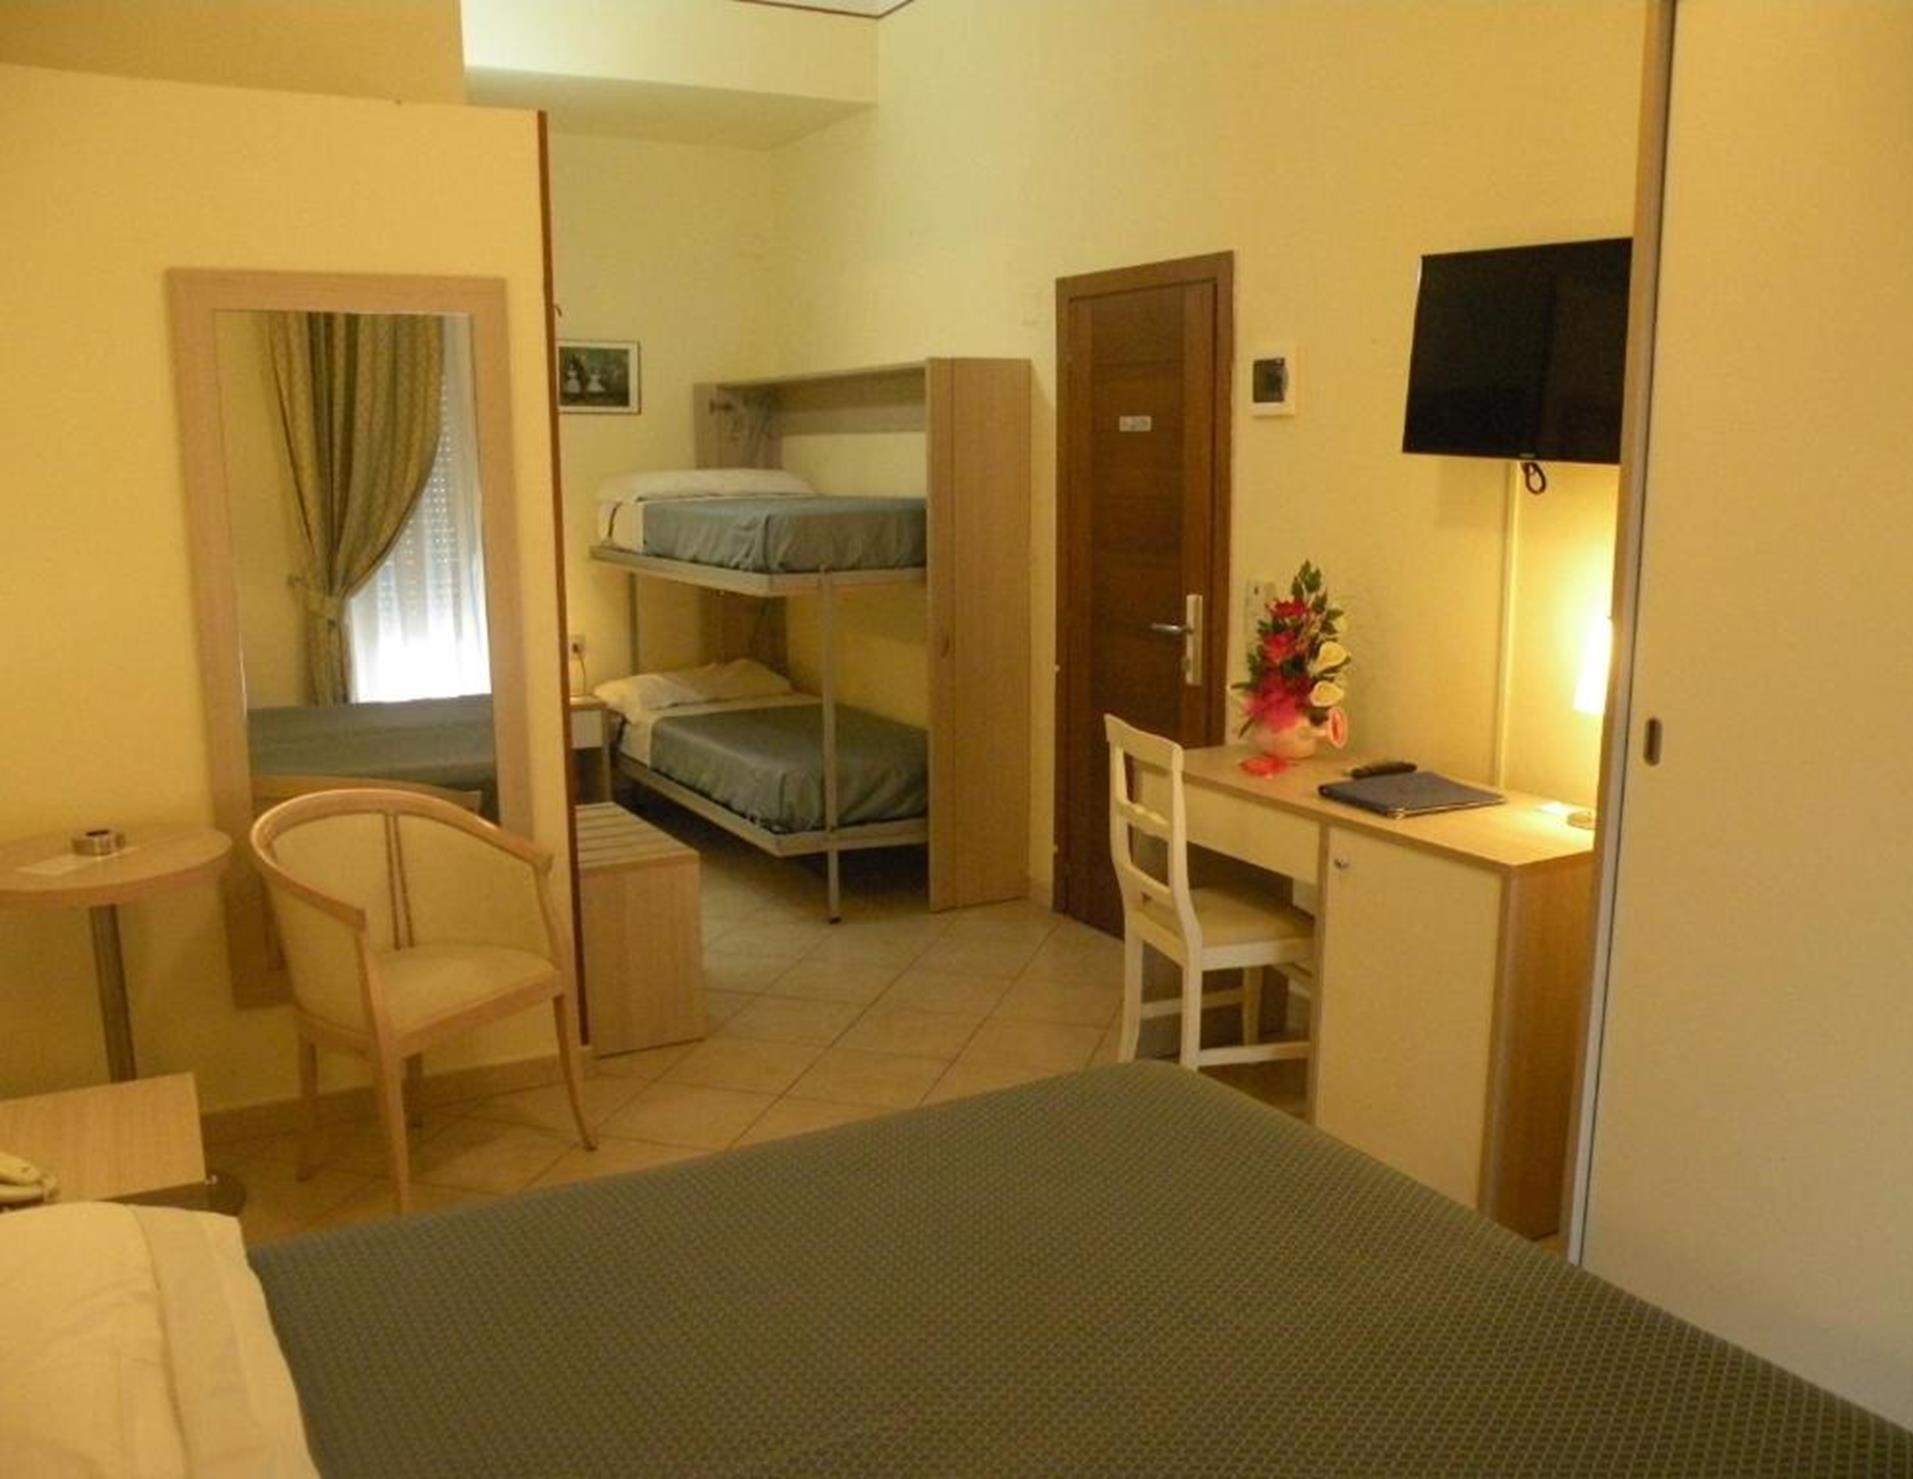 Hotel Parrini - Room 4